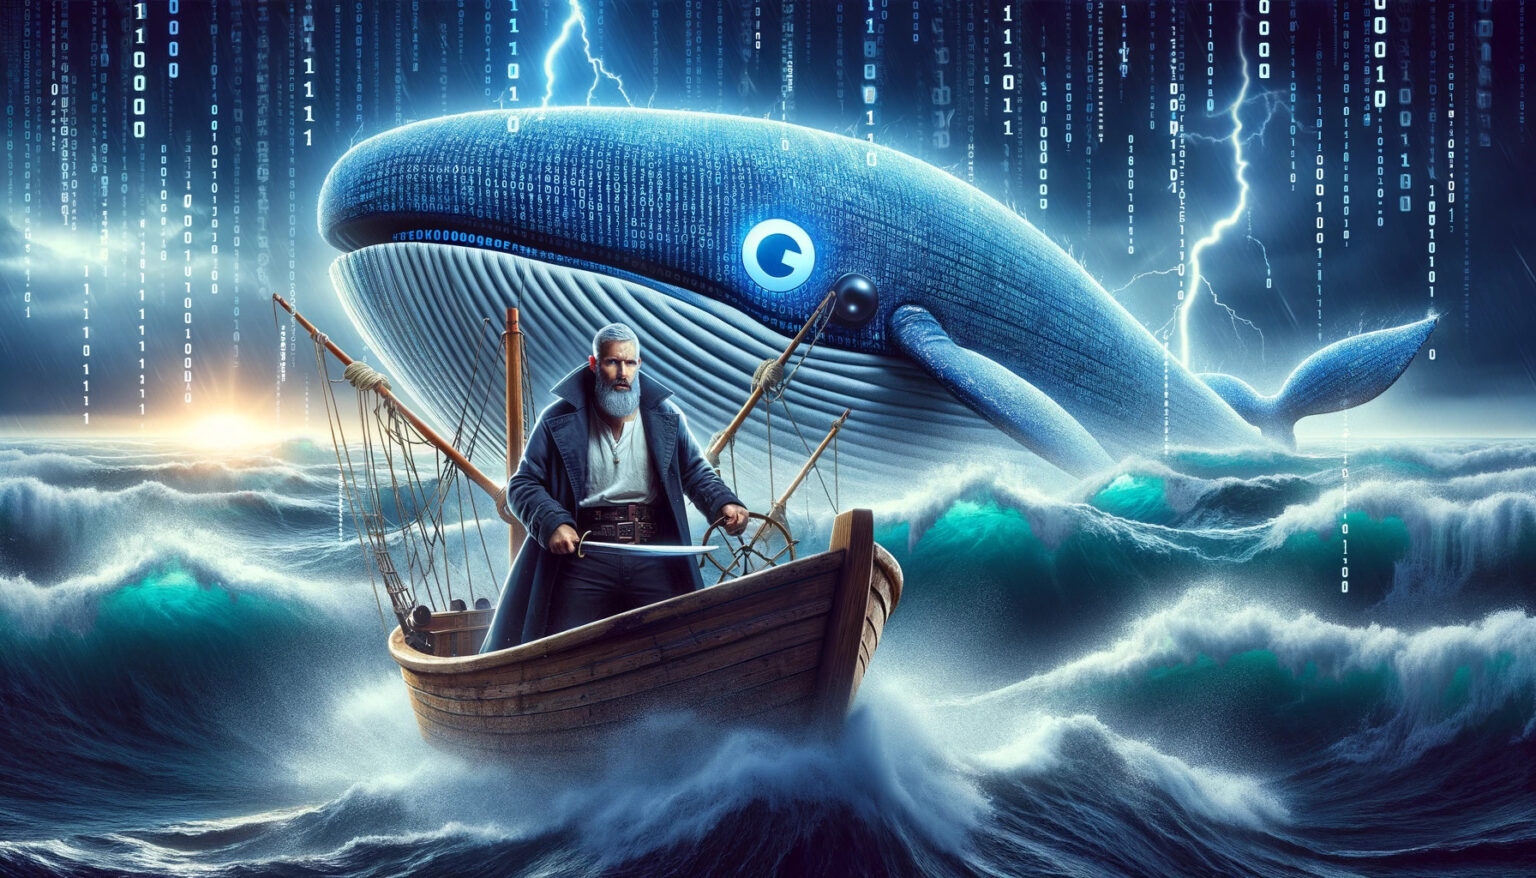 Moby-Click als Kapitän navigiert durch digitale Meere auf der Suche nach der perfekten Conversion-Rate.